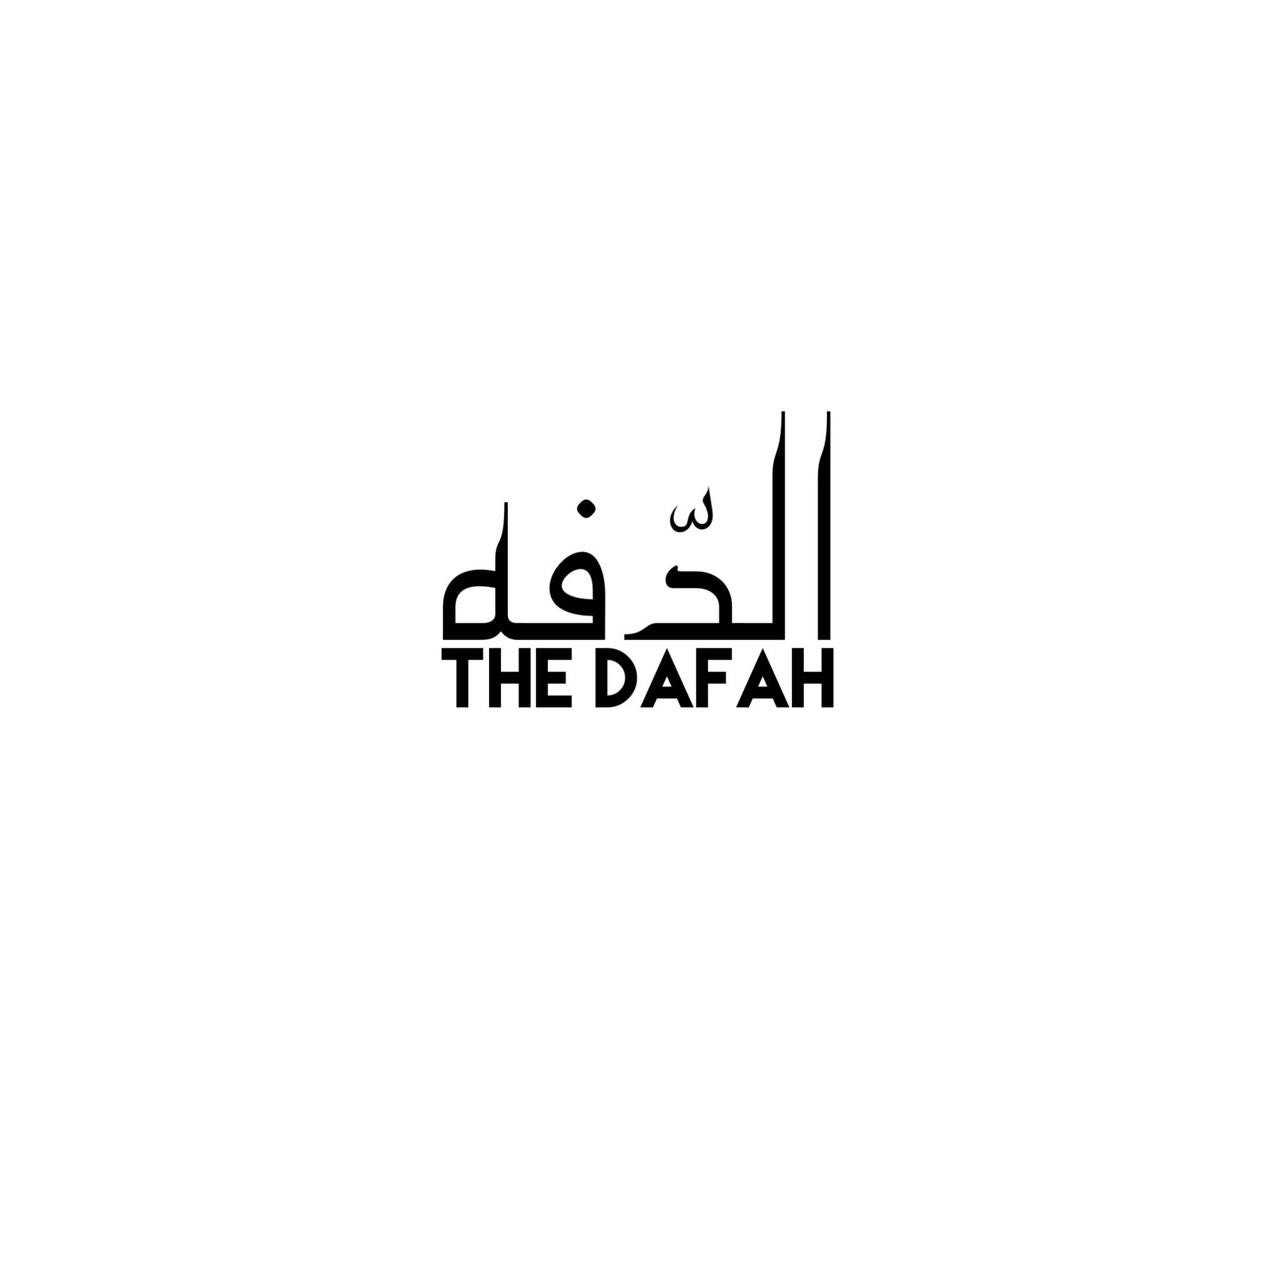 THE DAFAH